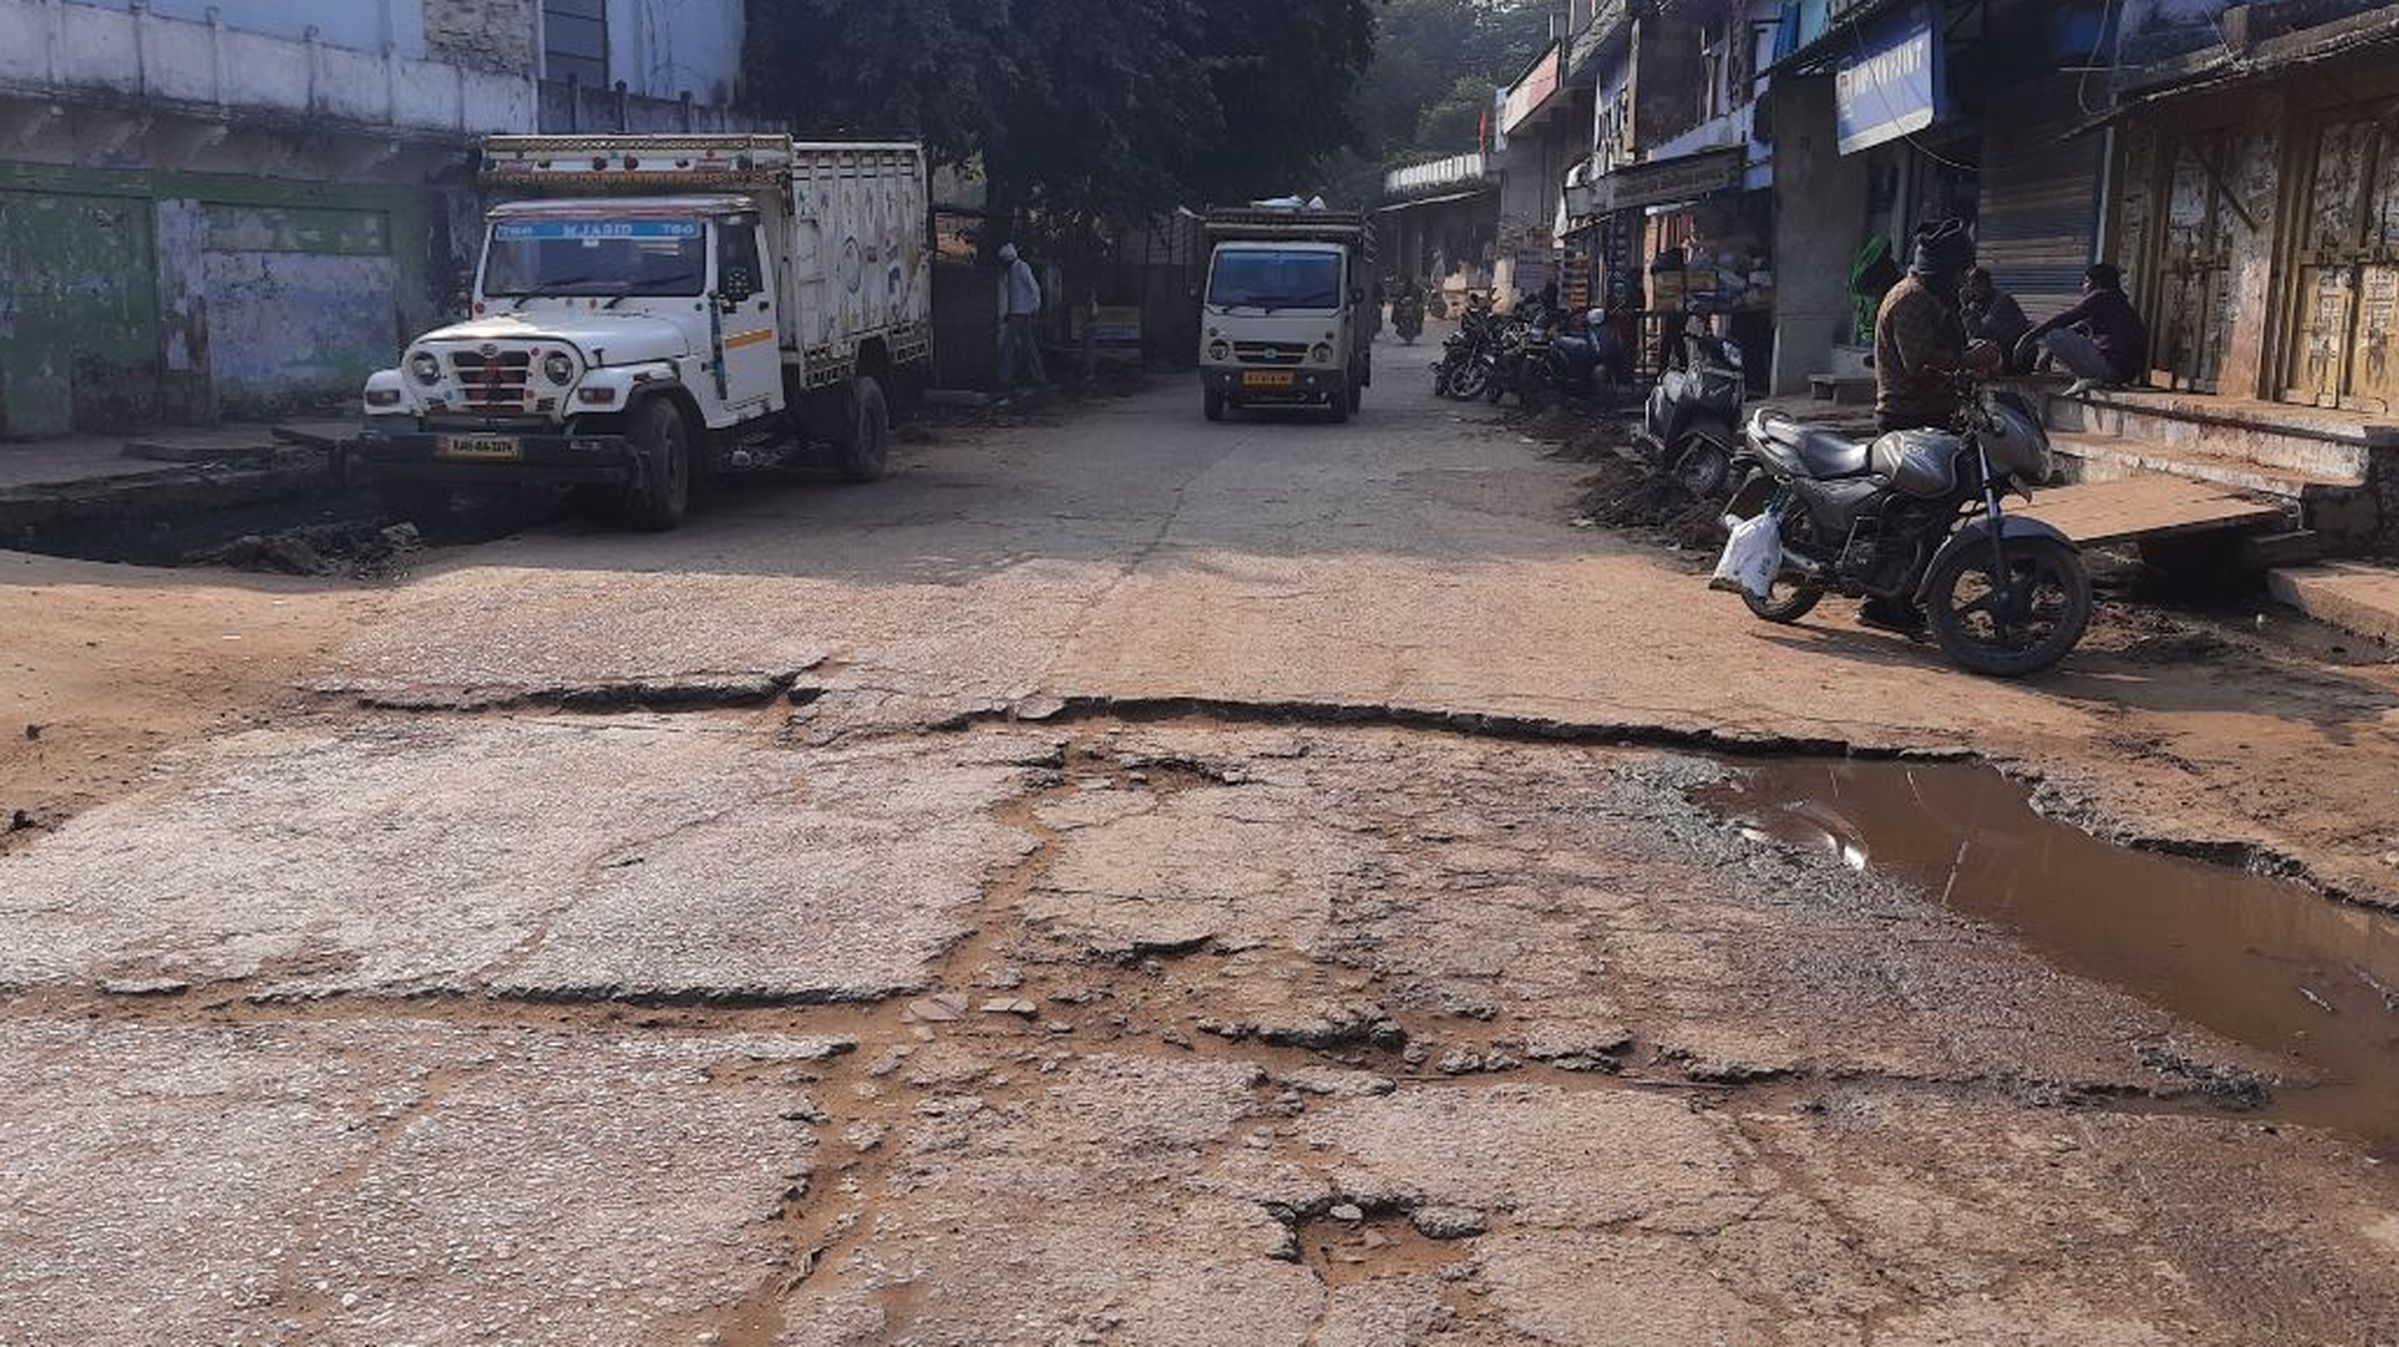 करौली जिले के शहरी क्षेत्रों में बदहाल सड़कों की अब सुधरेगी सूरत, इतने करोड़ रुपए होंगे खर्च